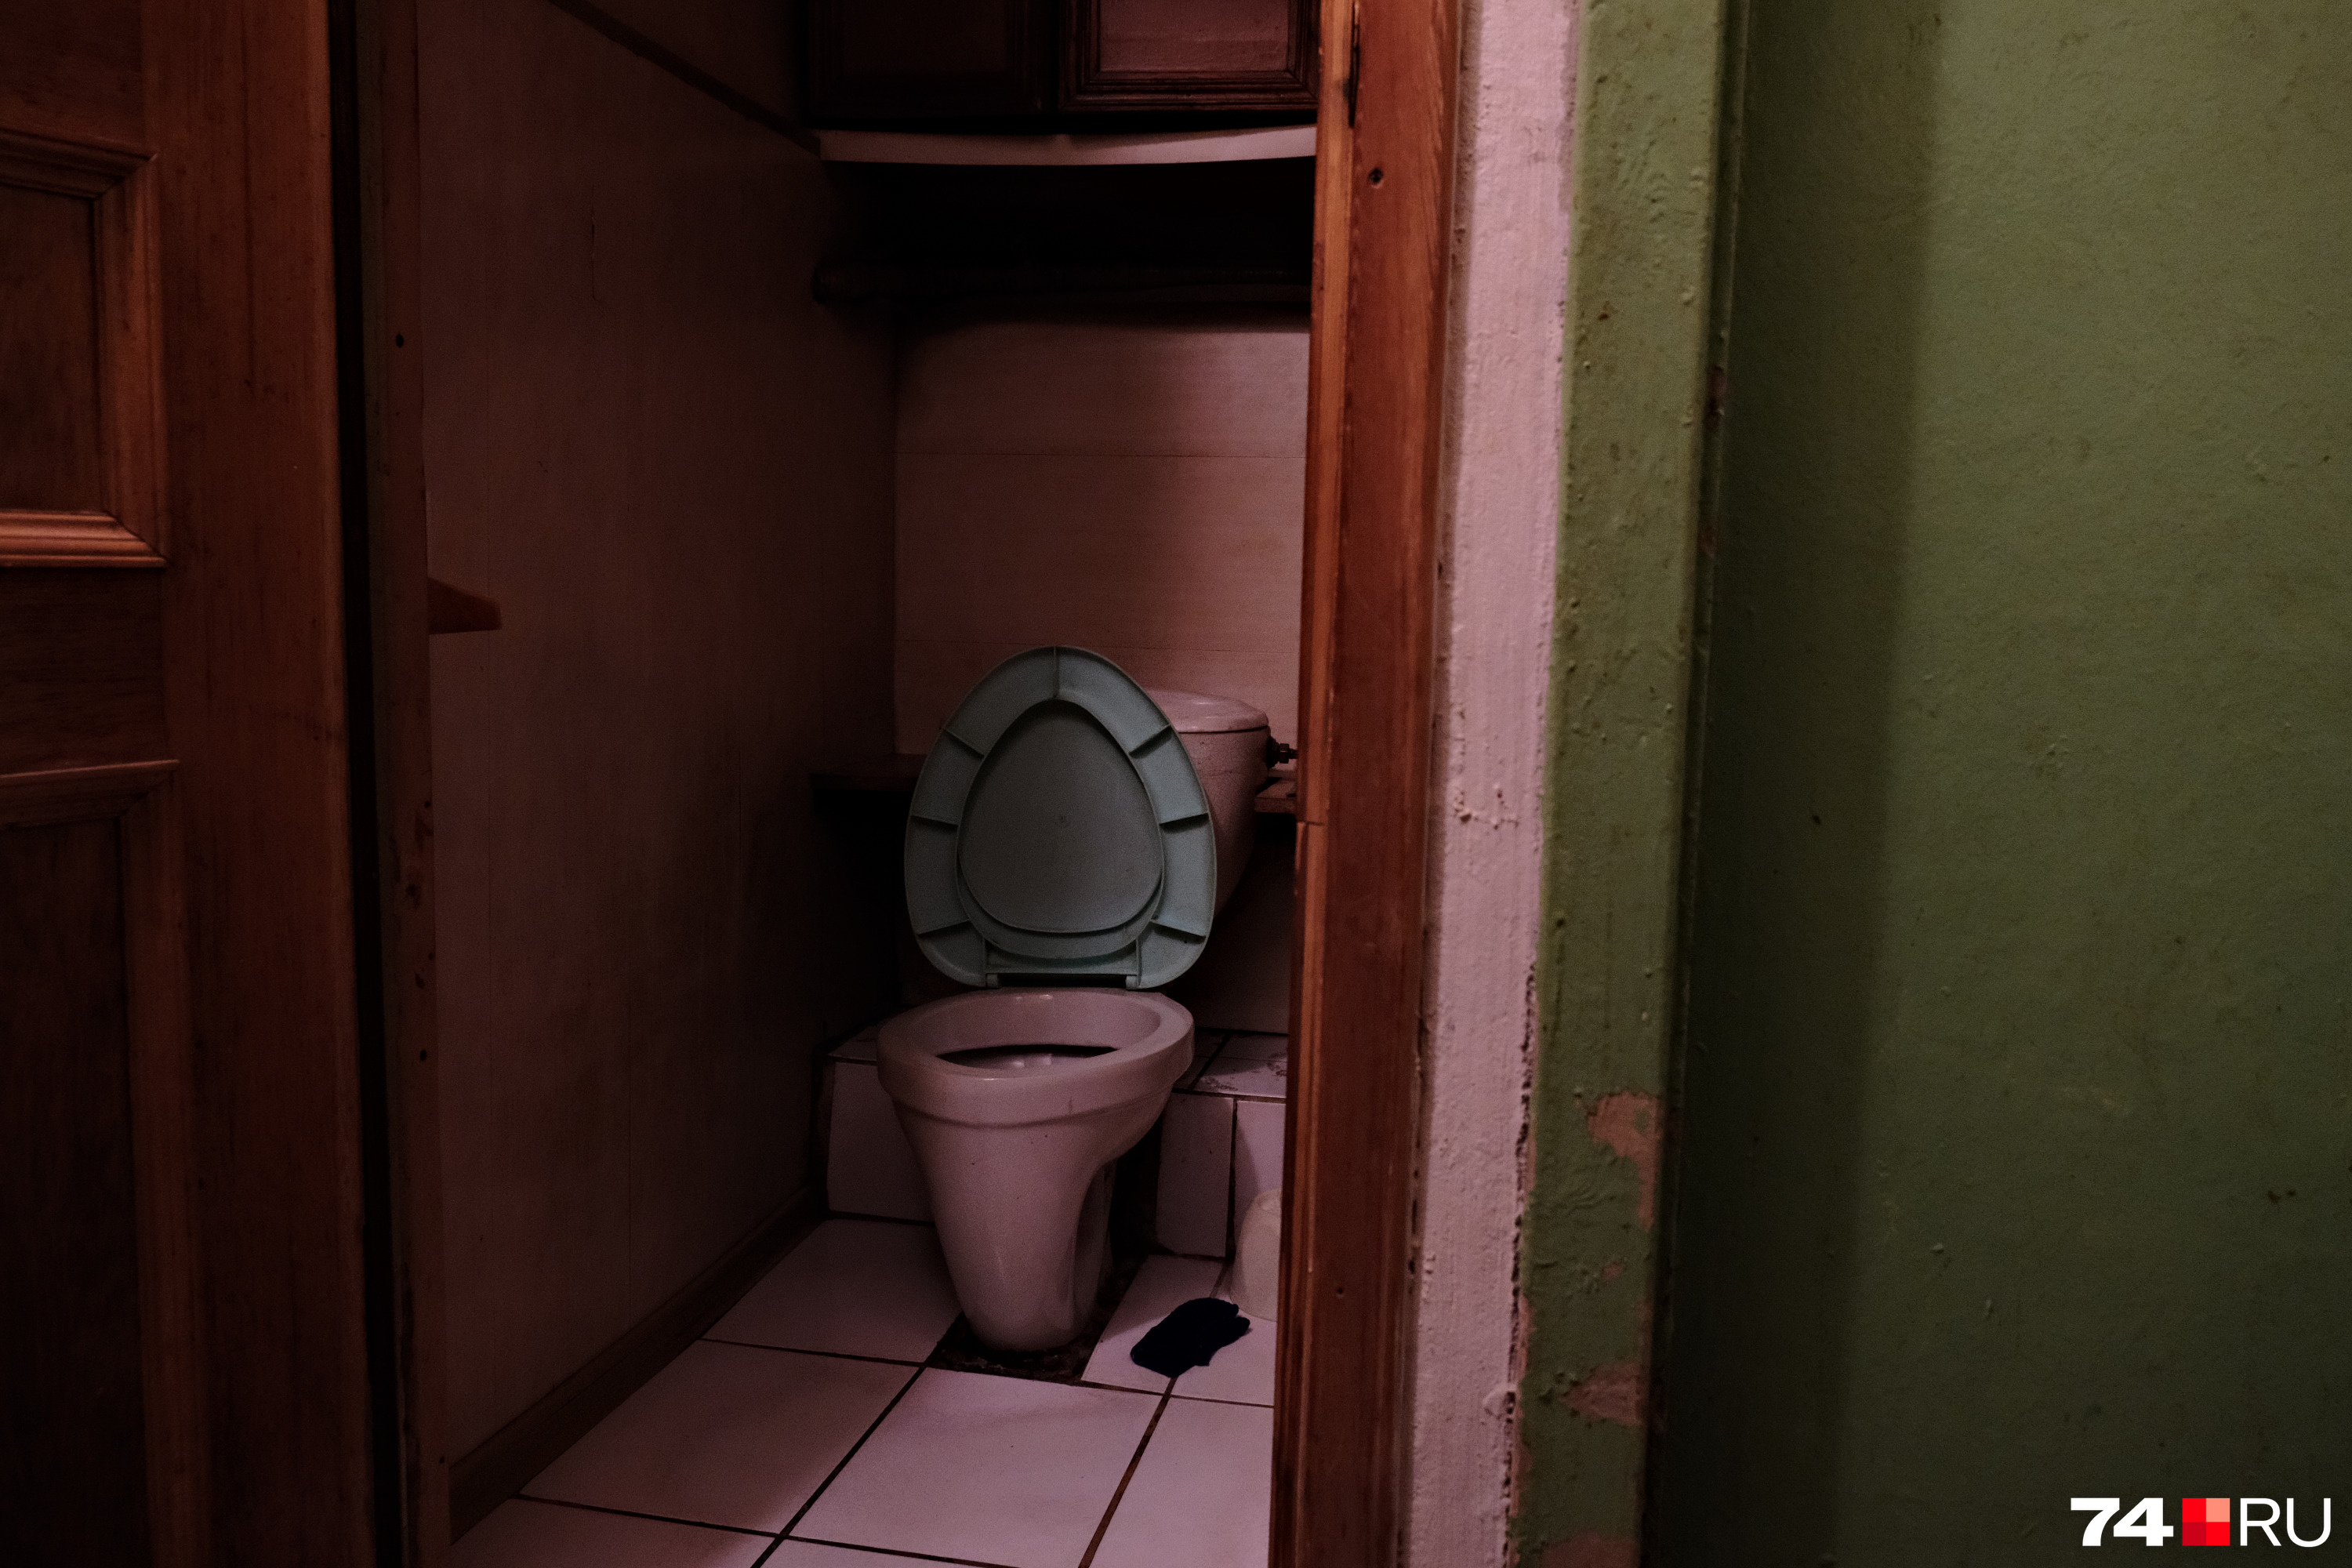 На четыре комнаты — два туалета, так очередей меньше